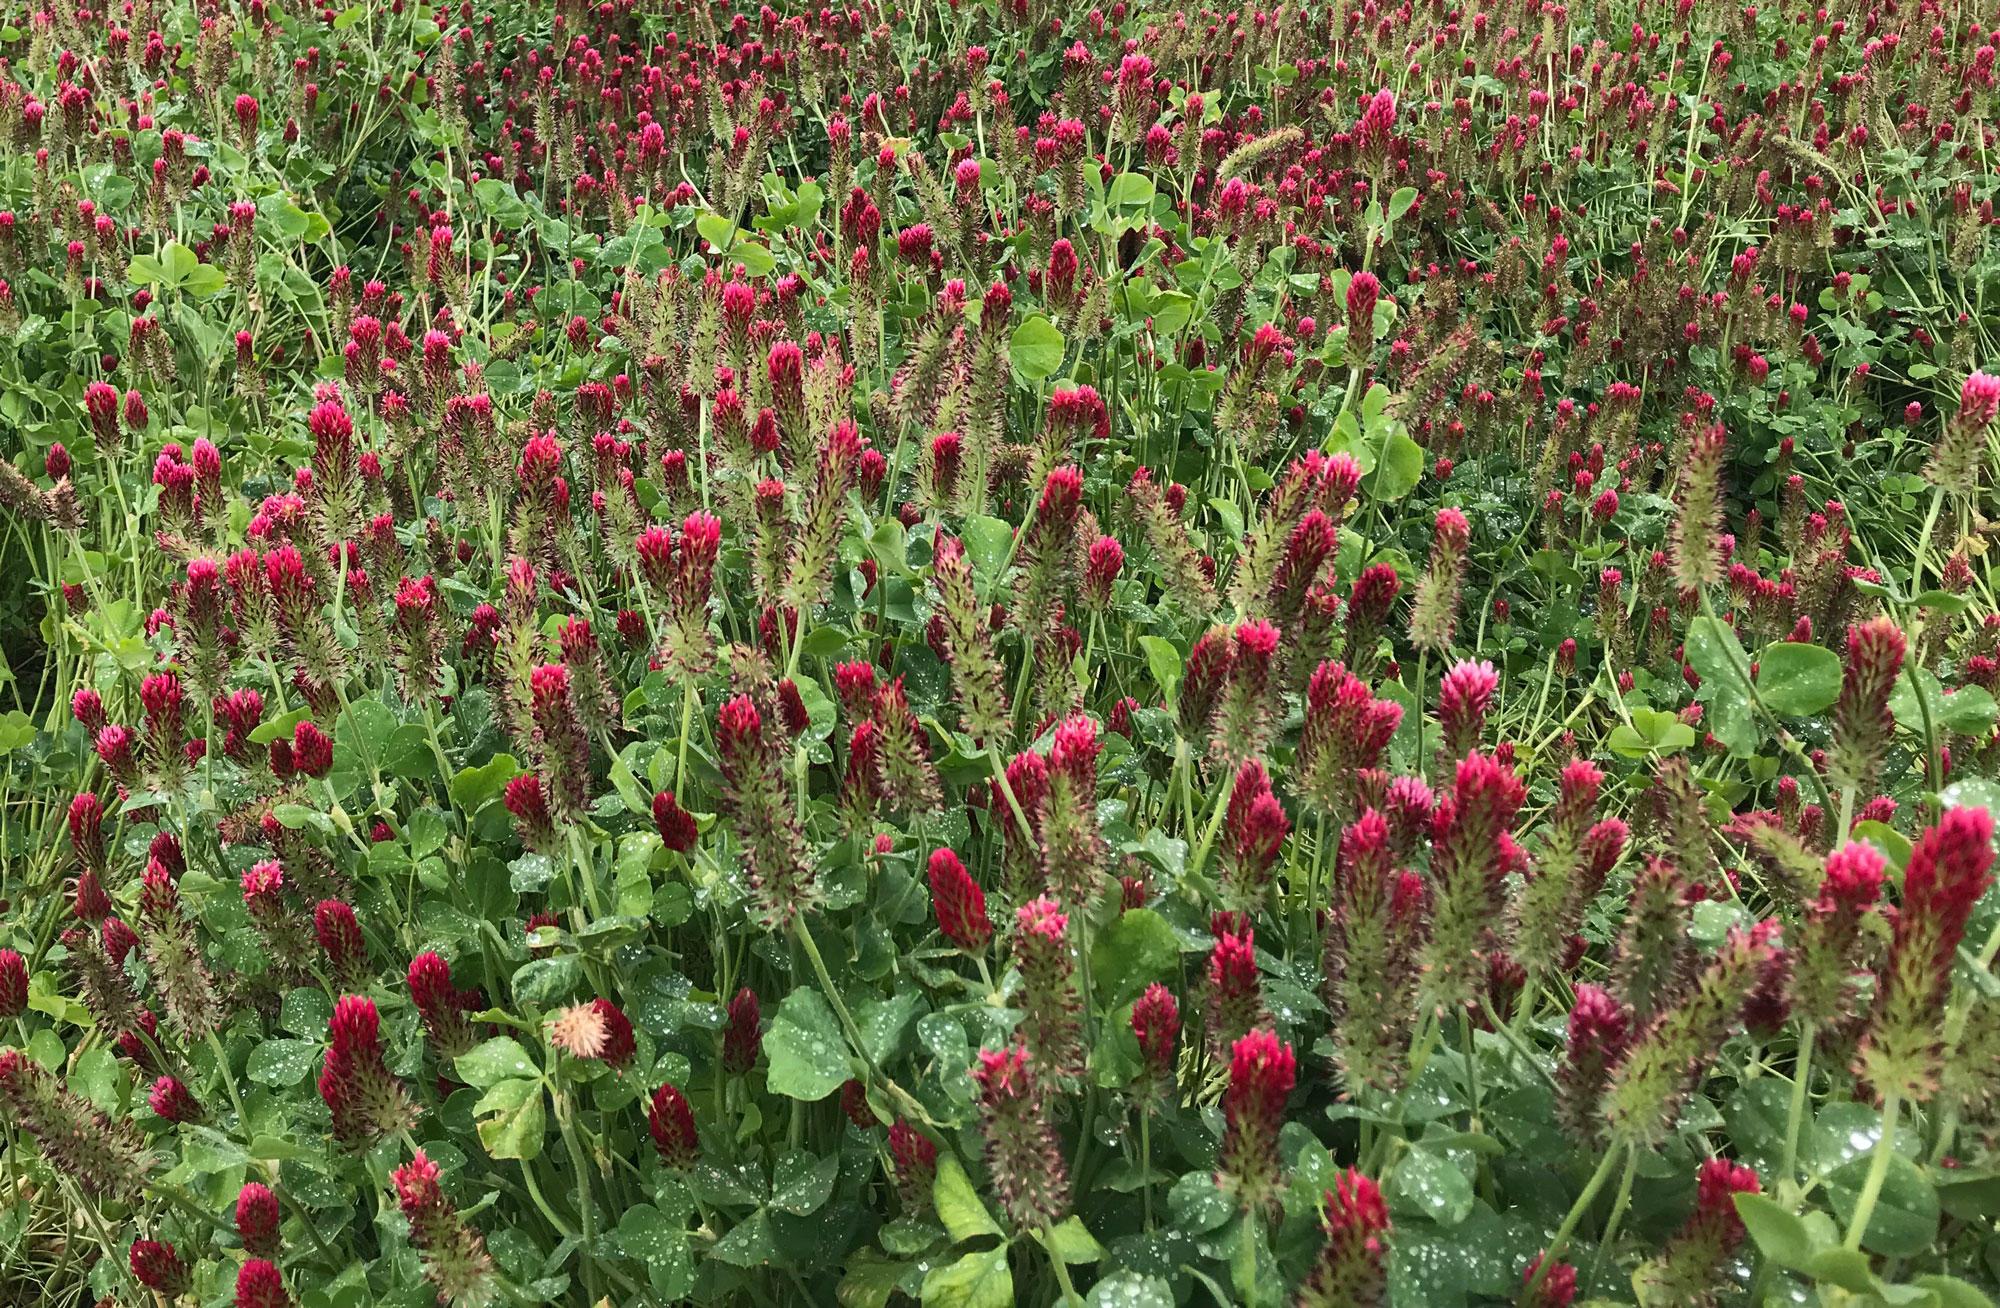 A field of crimson clover